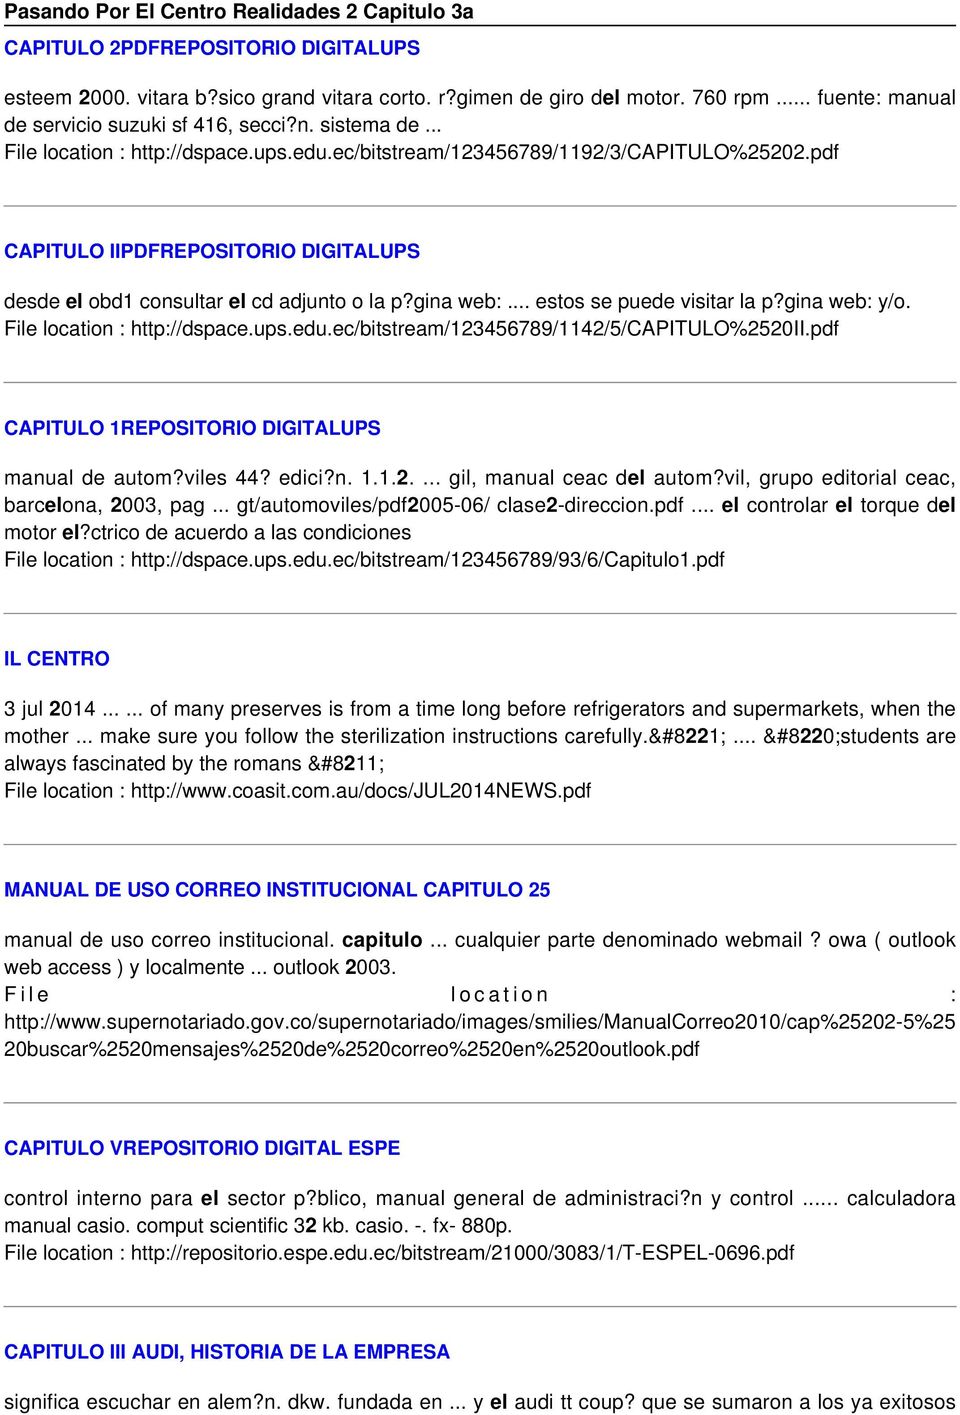 pdf CAPITULO IIPDFREPOSITORIO DIGITALUPS desde el obd1 consultar el cd adjunto o la p?gina web:... estos se puede visitar la p?gina web: y/o. http://dspace.ups.edu.